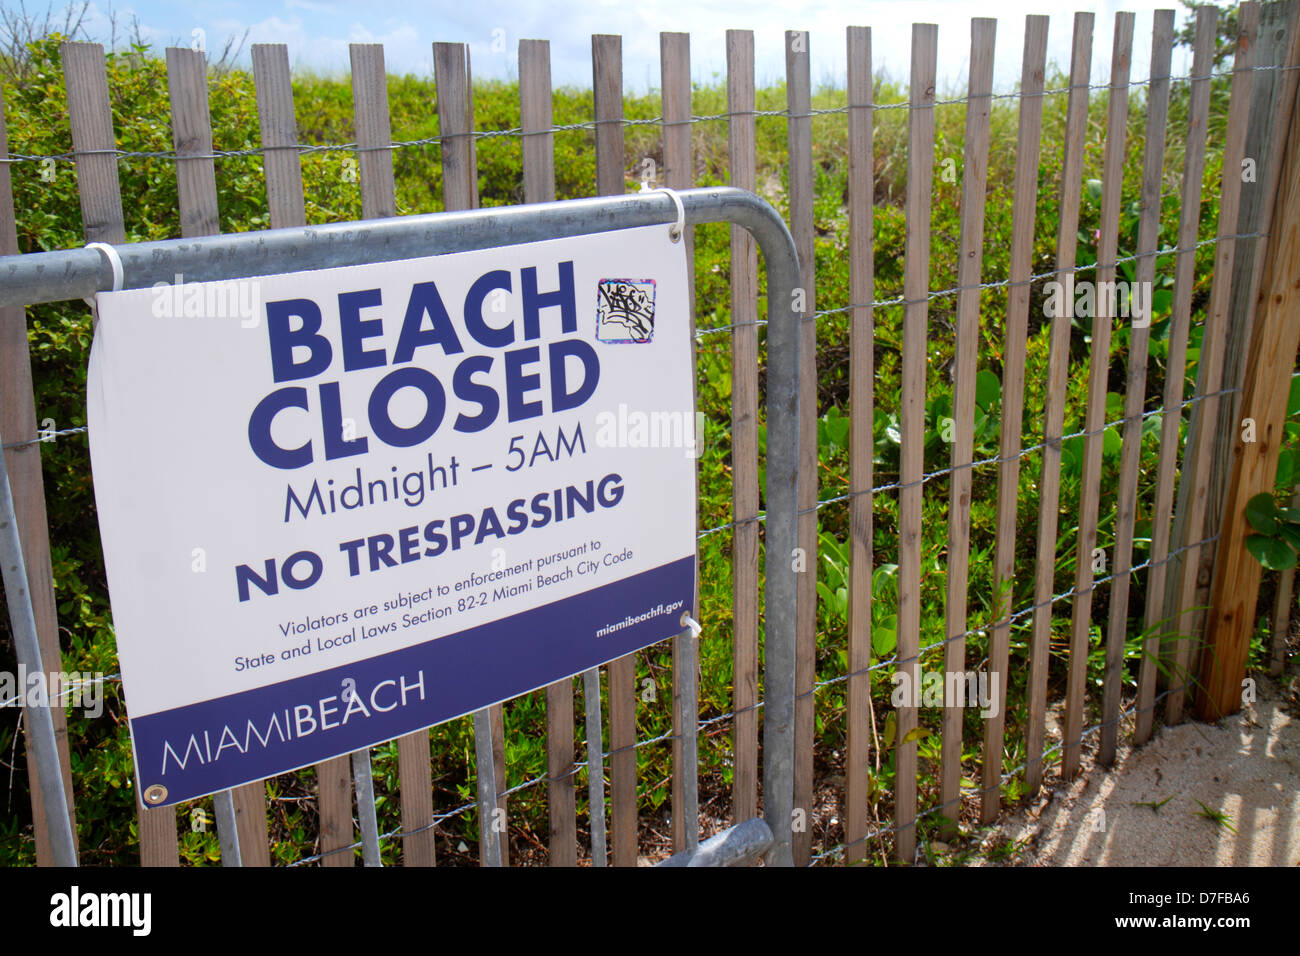 Miami Beach Florida, dunas protegidas, cerca, letrero, playa cerrada a medianoche, sin intrusión, toque de queda,FL120720008 Foto de stock